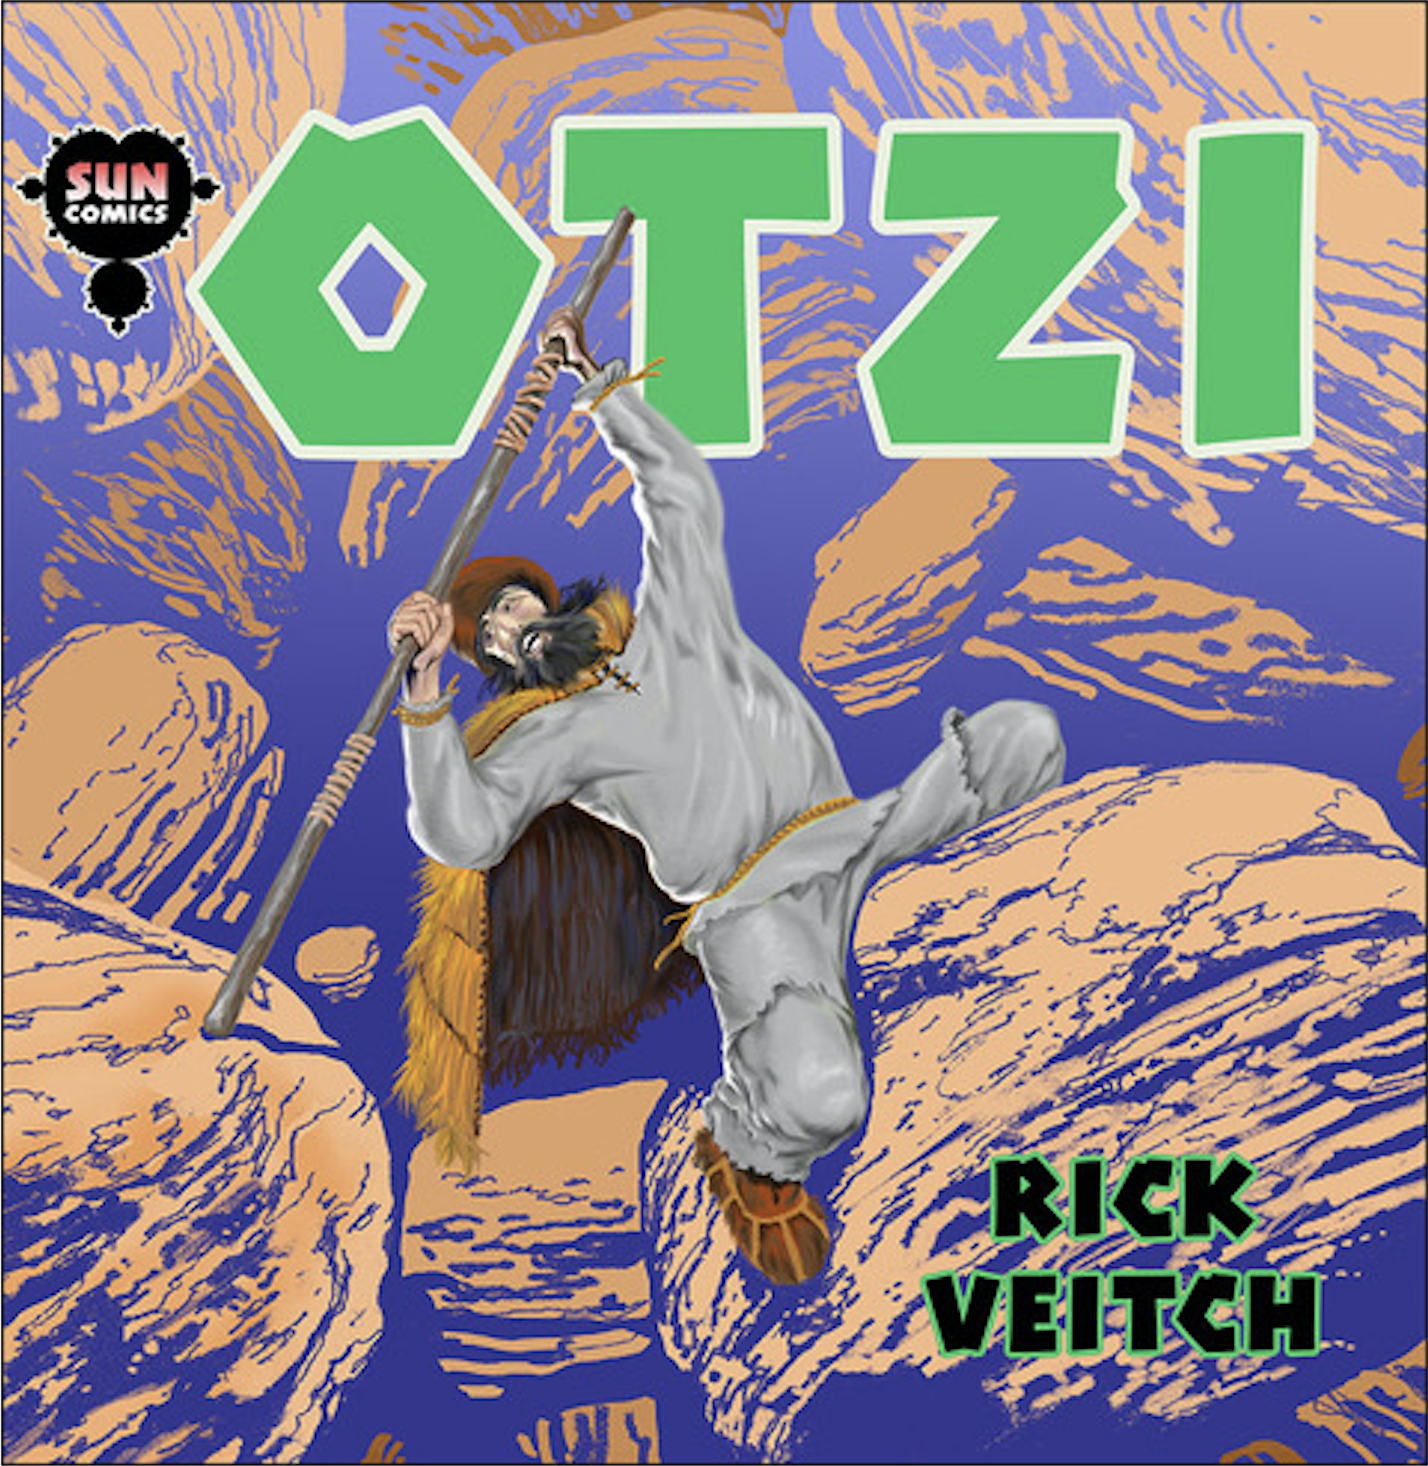 Otzi Graphic Novel